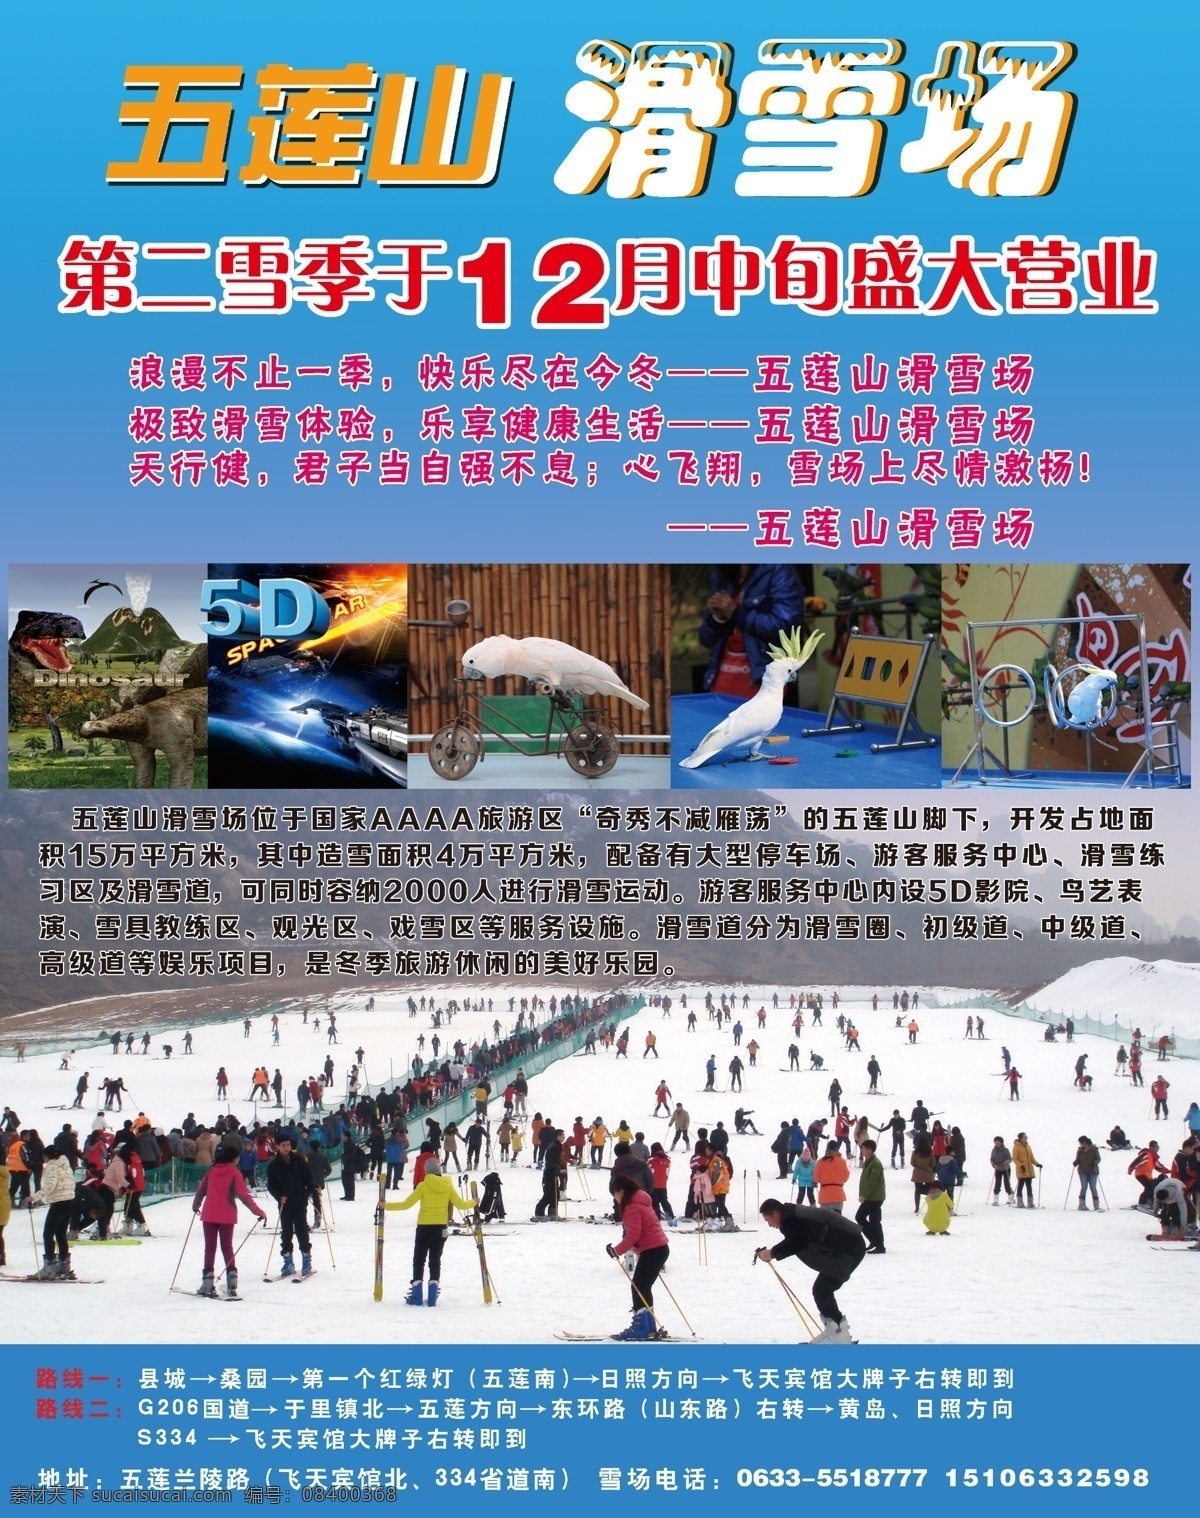 滑雪场广告 彩页 旅游景点 滑雪 溜冰 dm宣传单 广告设计模板 源文件